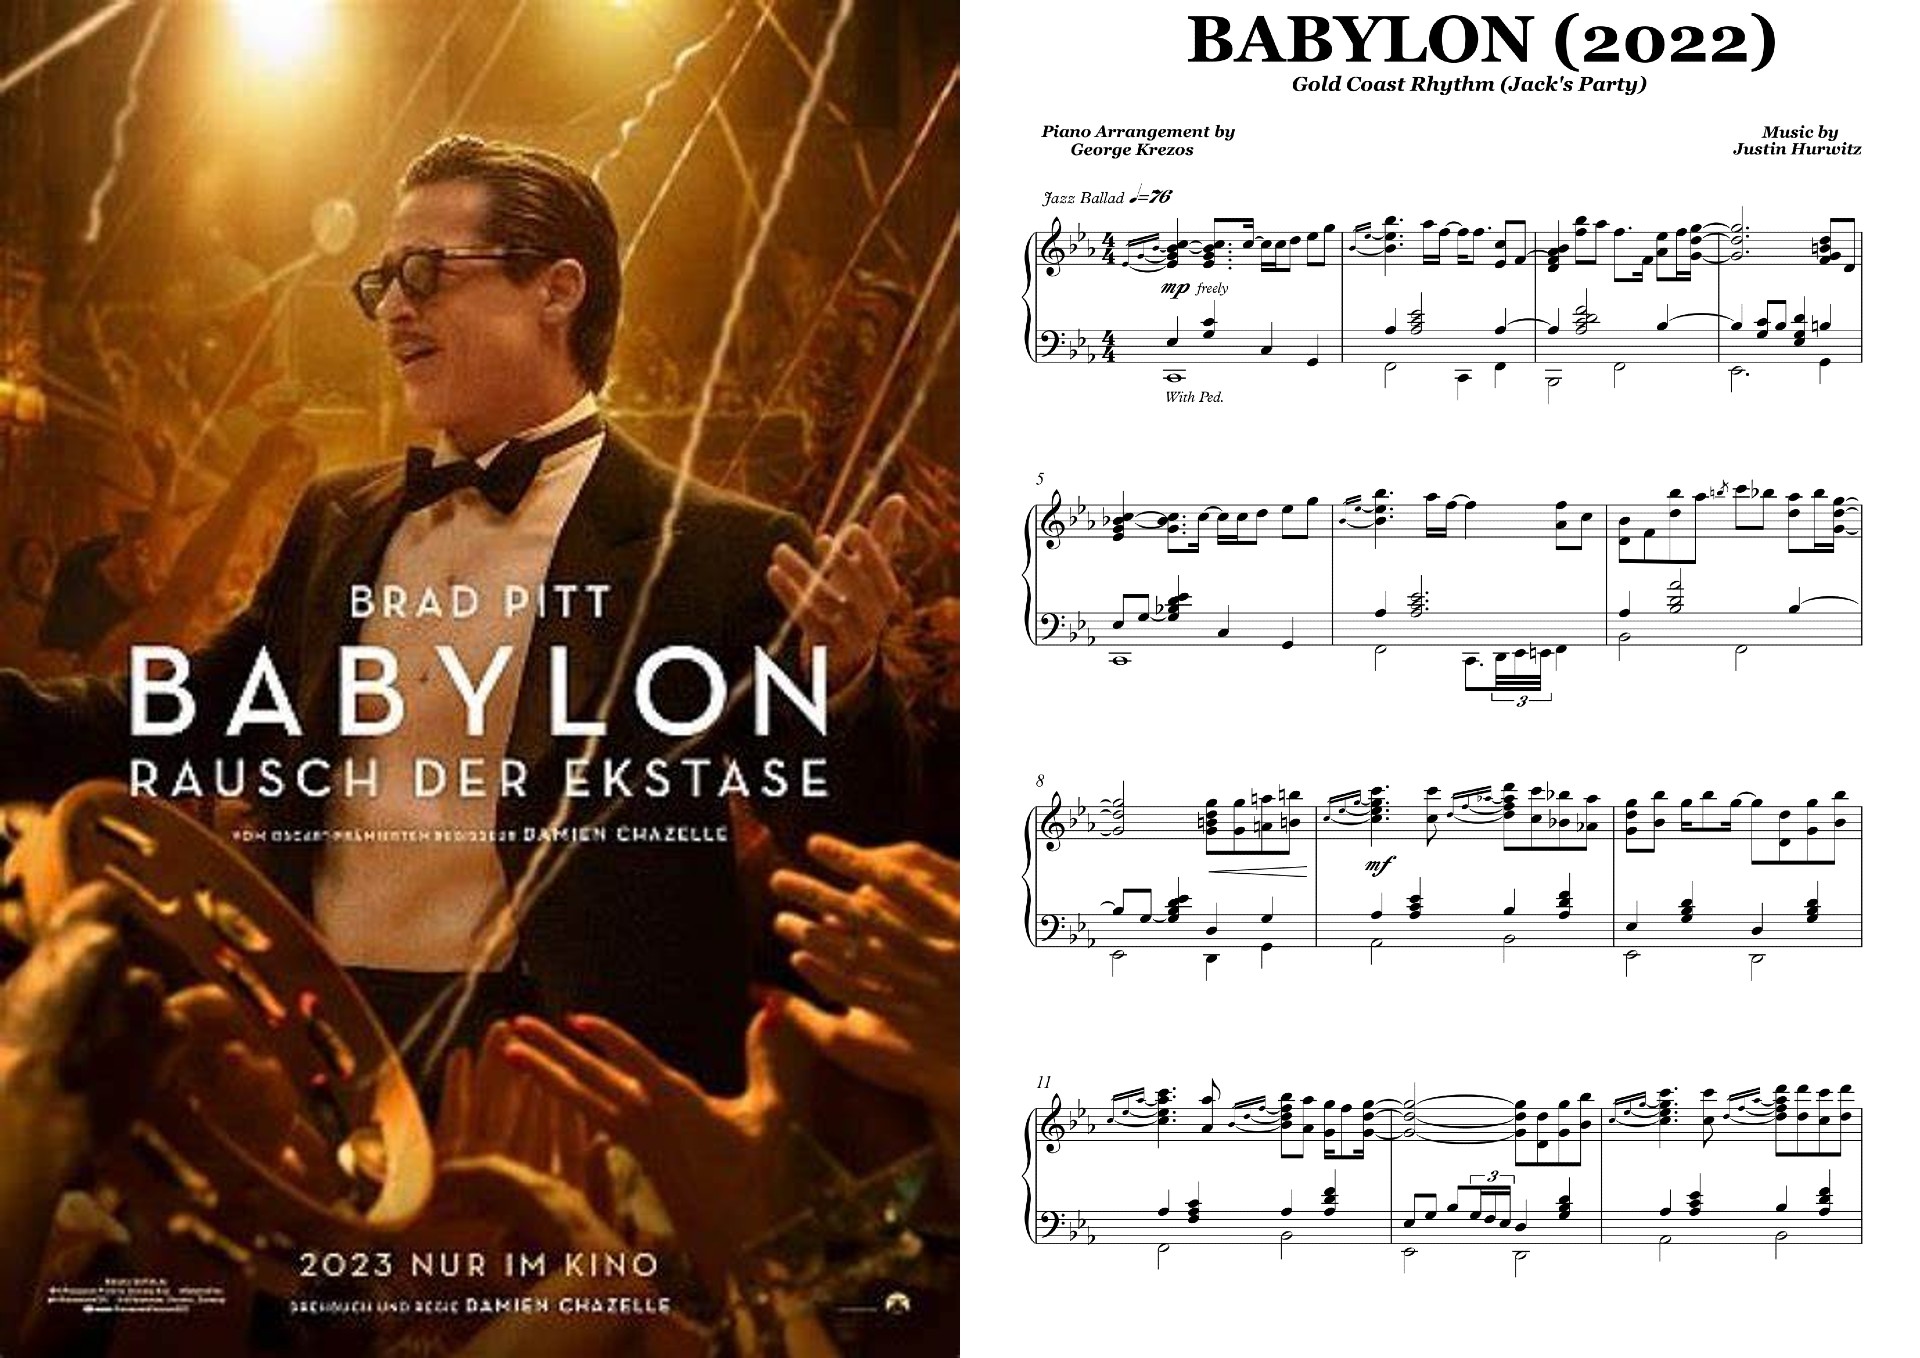 BABYLON - Gold Coast Rhythm (Jack's Party).jpg